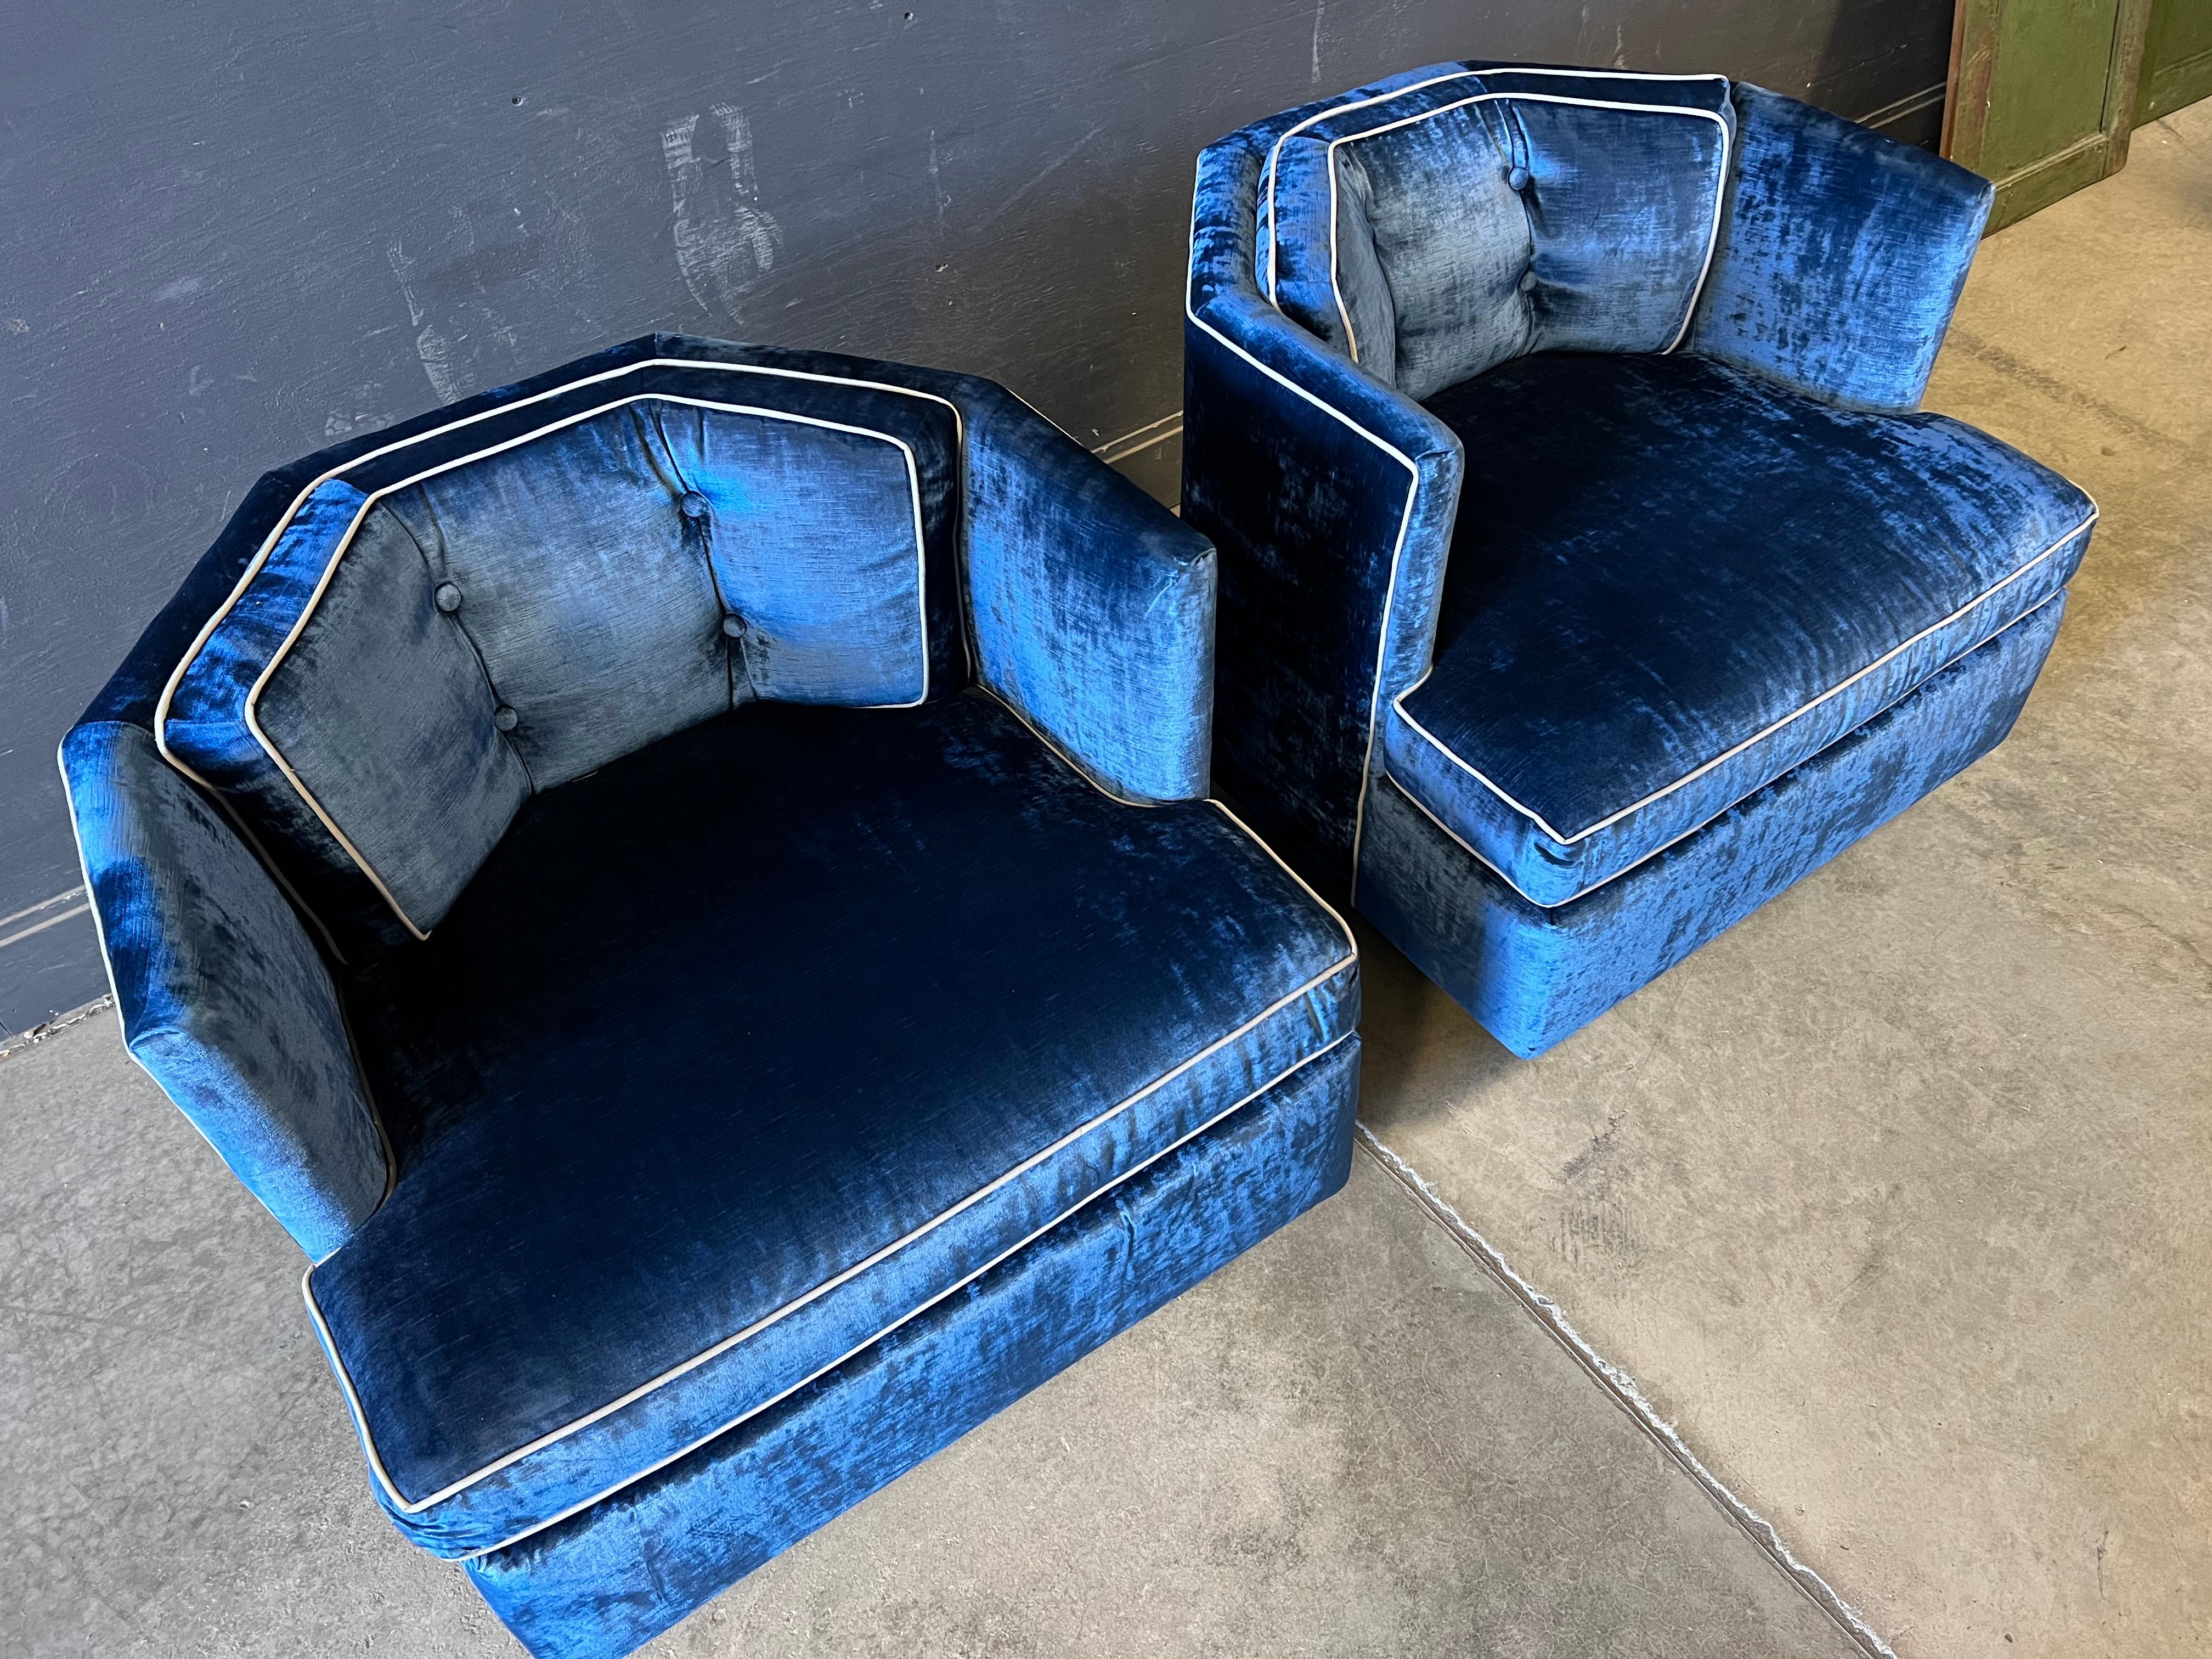 Seltenes Paar exquisiter Lounge-Sessel aus blauem Samt in halb-oktogonaler Form, die Milo Baughman zugeschrieben werden. Die Loungesessel sind Paradebeispiele für den Luxus der damaligen Zeit und befinden sich in einem sehr guten Zustand, da sie